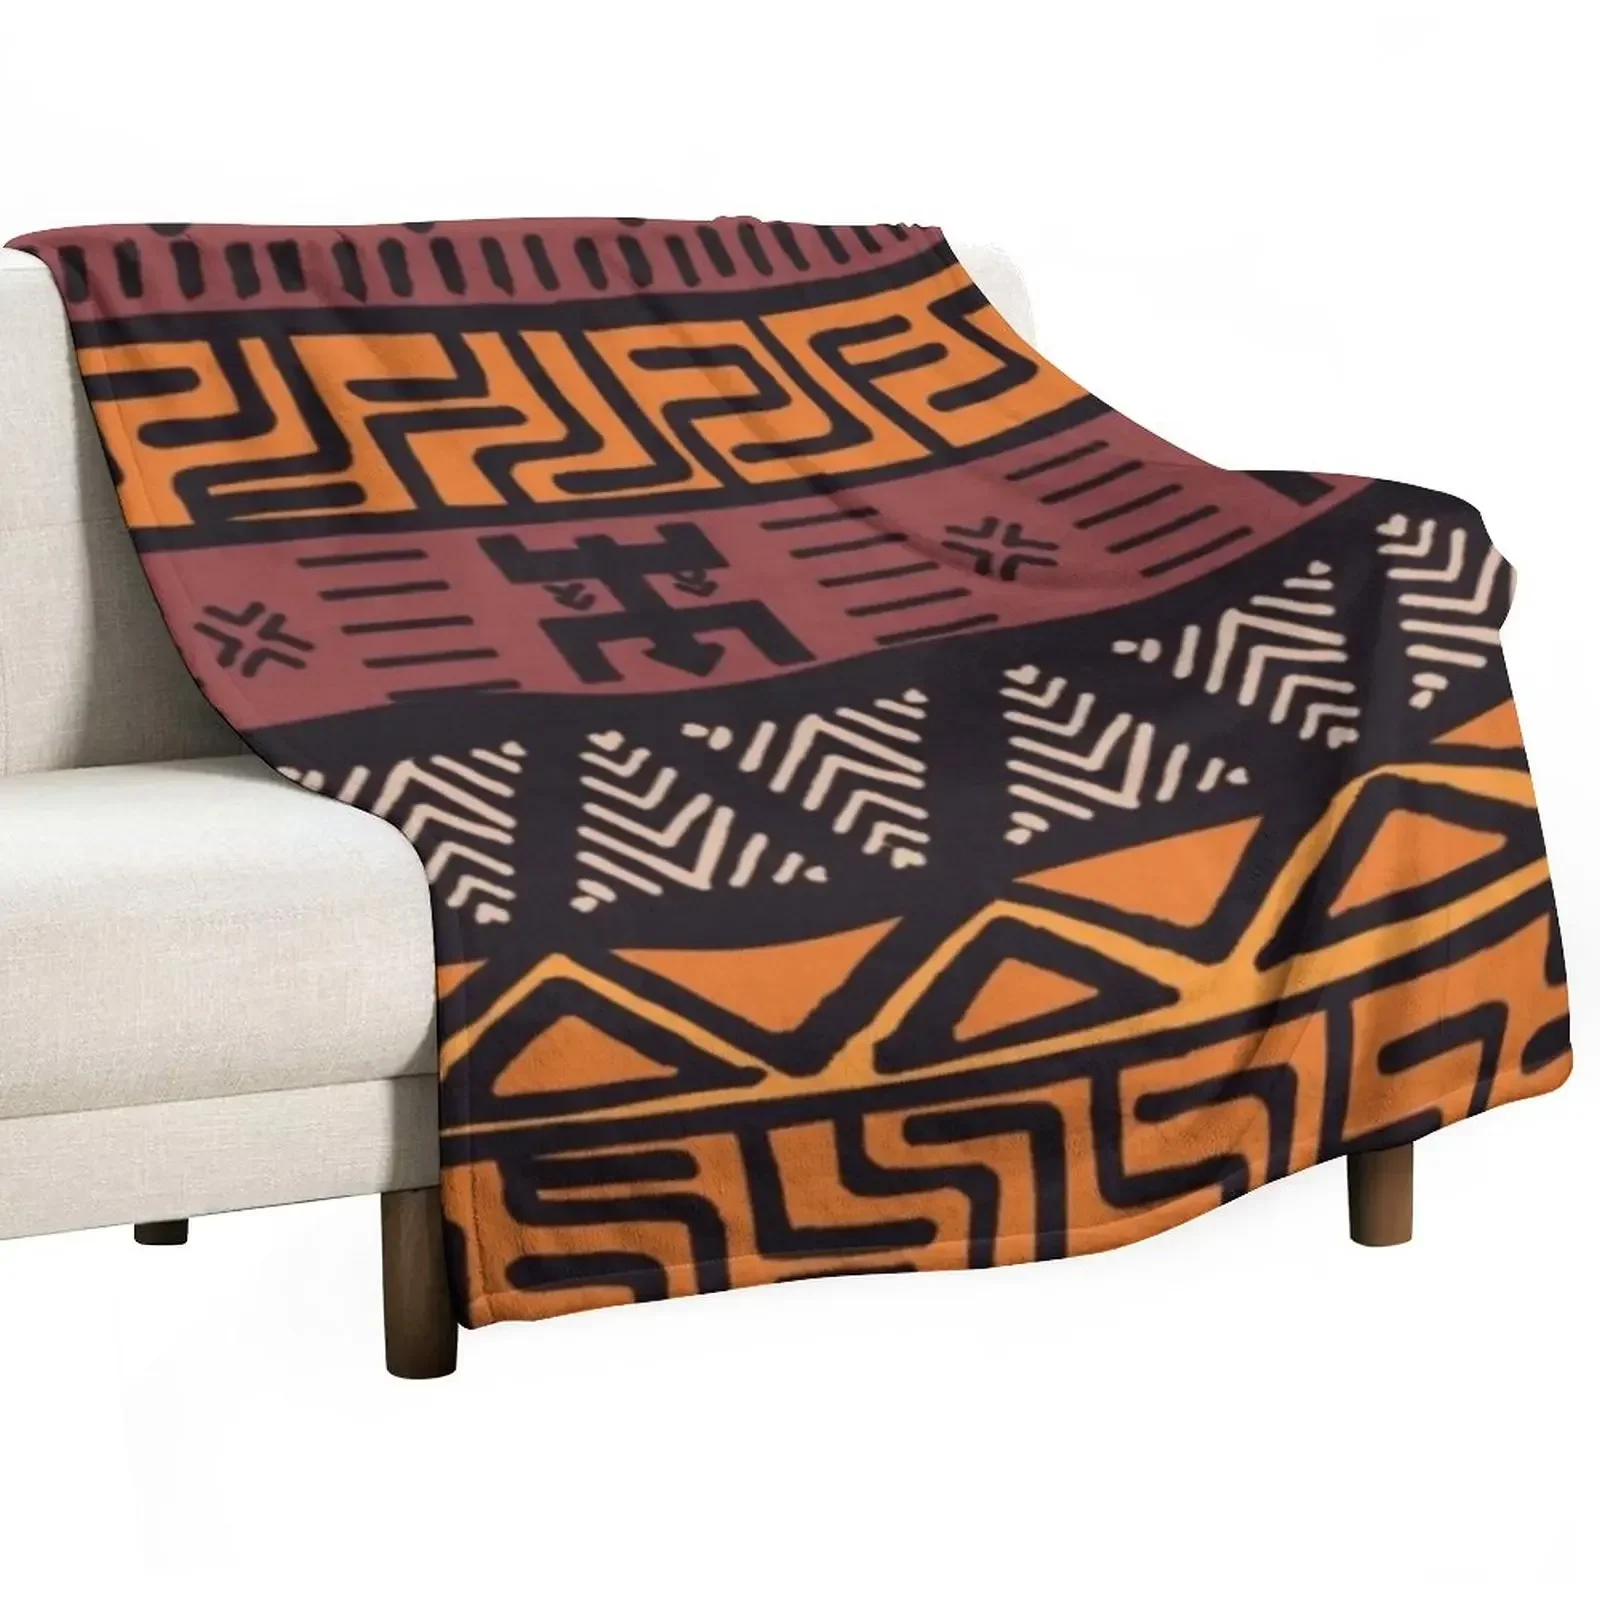 

Плед с Африканским племенным принтом, покрывала для кровати, дивана, косплей, аниме одеяла